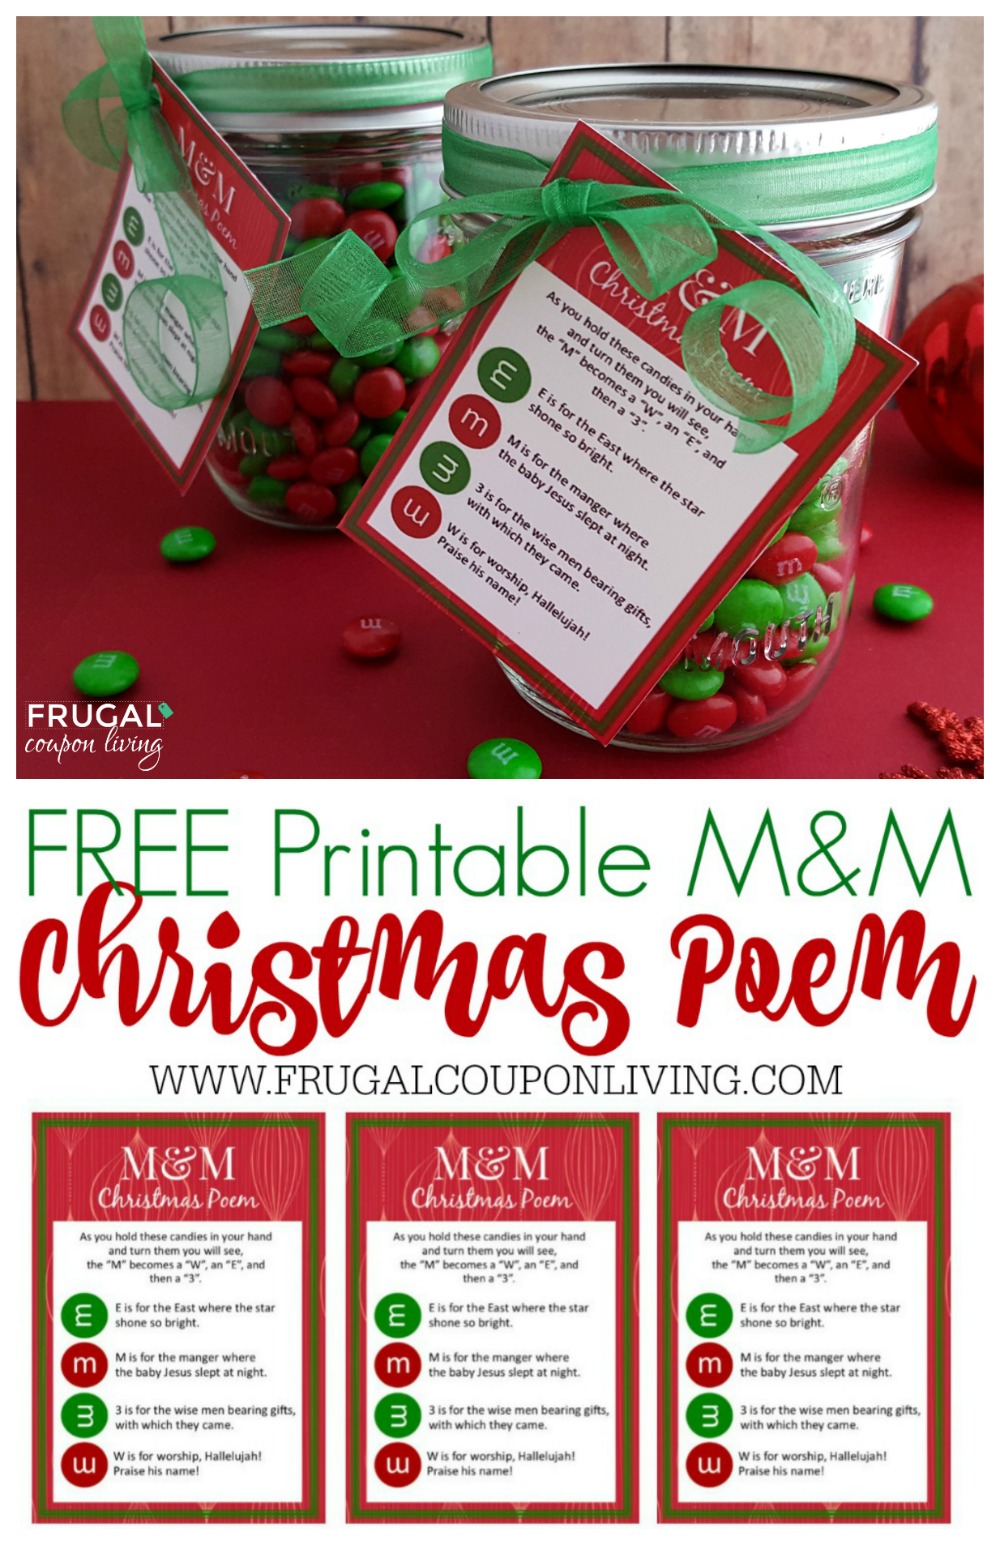 M&M Christmas Poem and FREE Printable Gift Tag